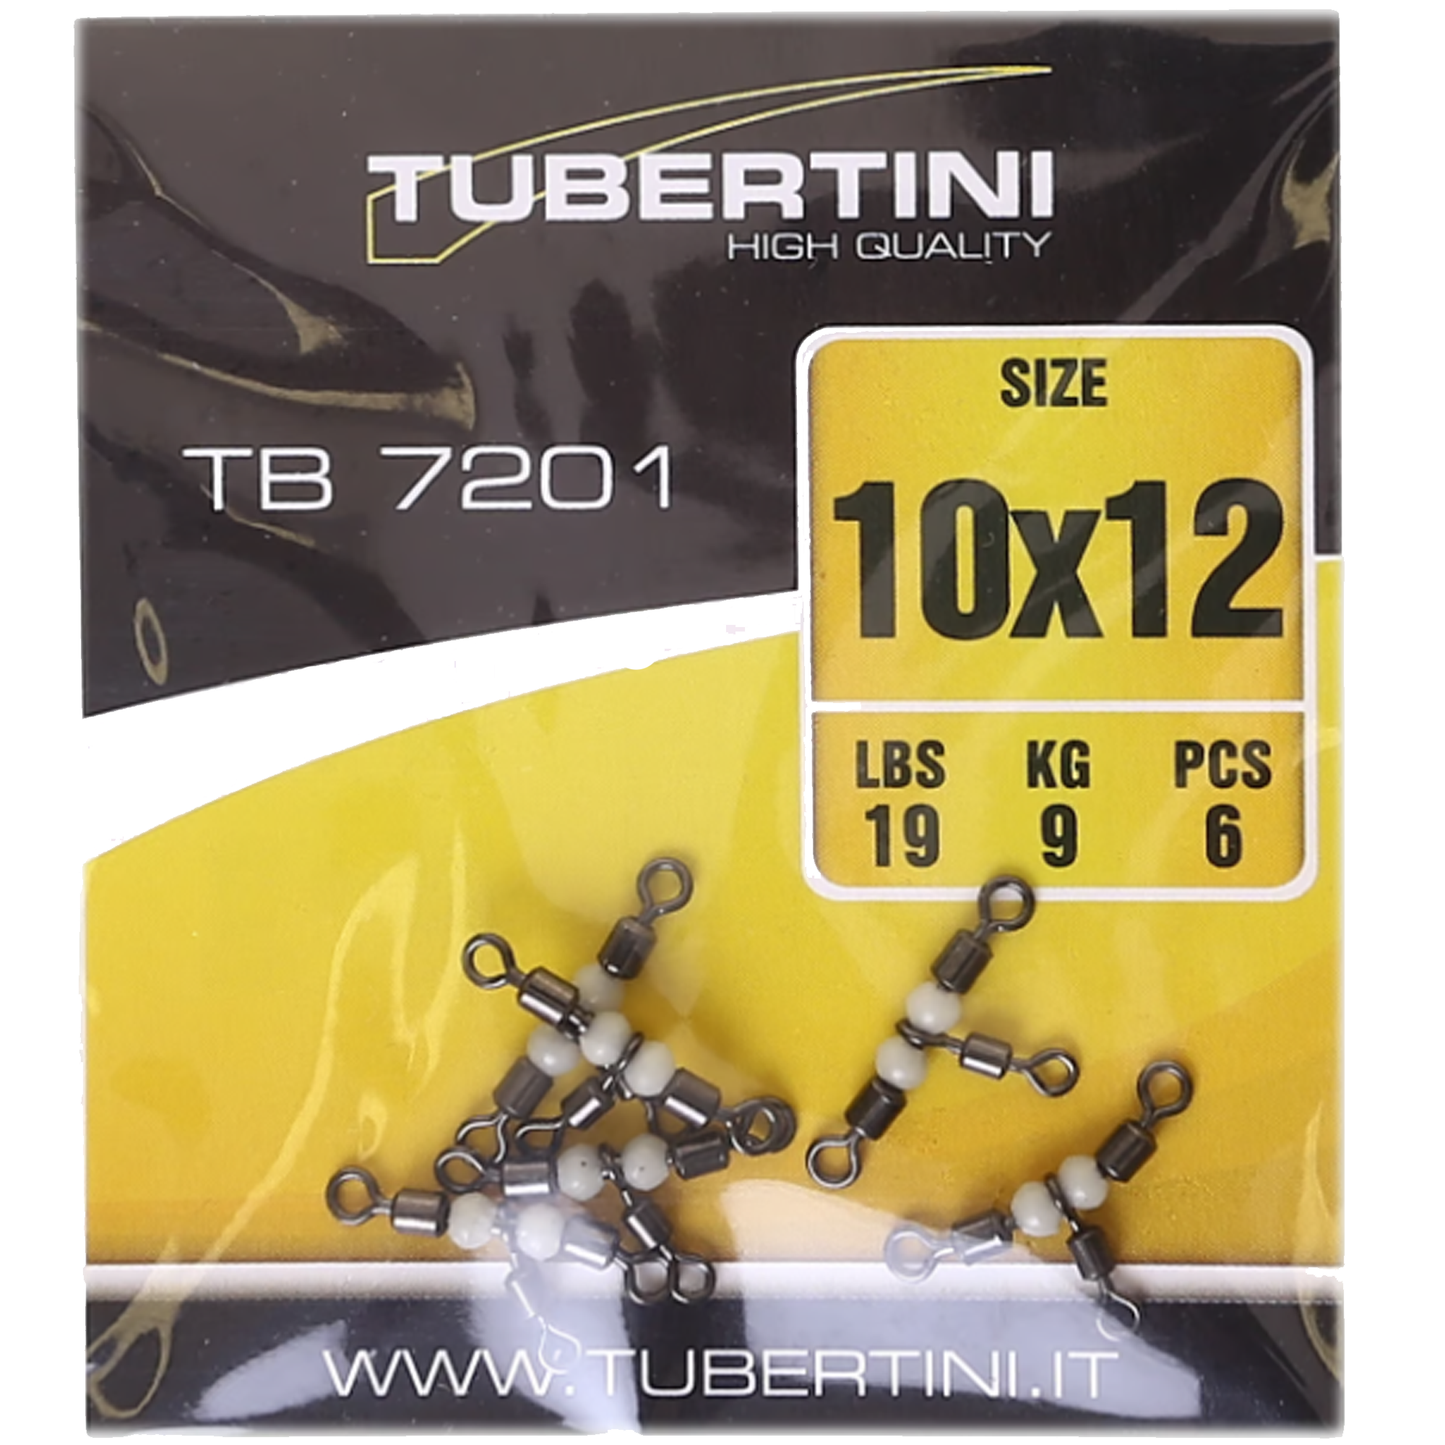 Tubertini - ROLLING TRIANGLE TB 7201